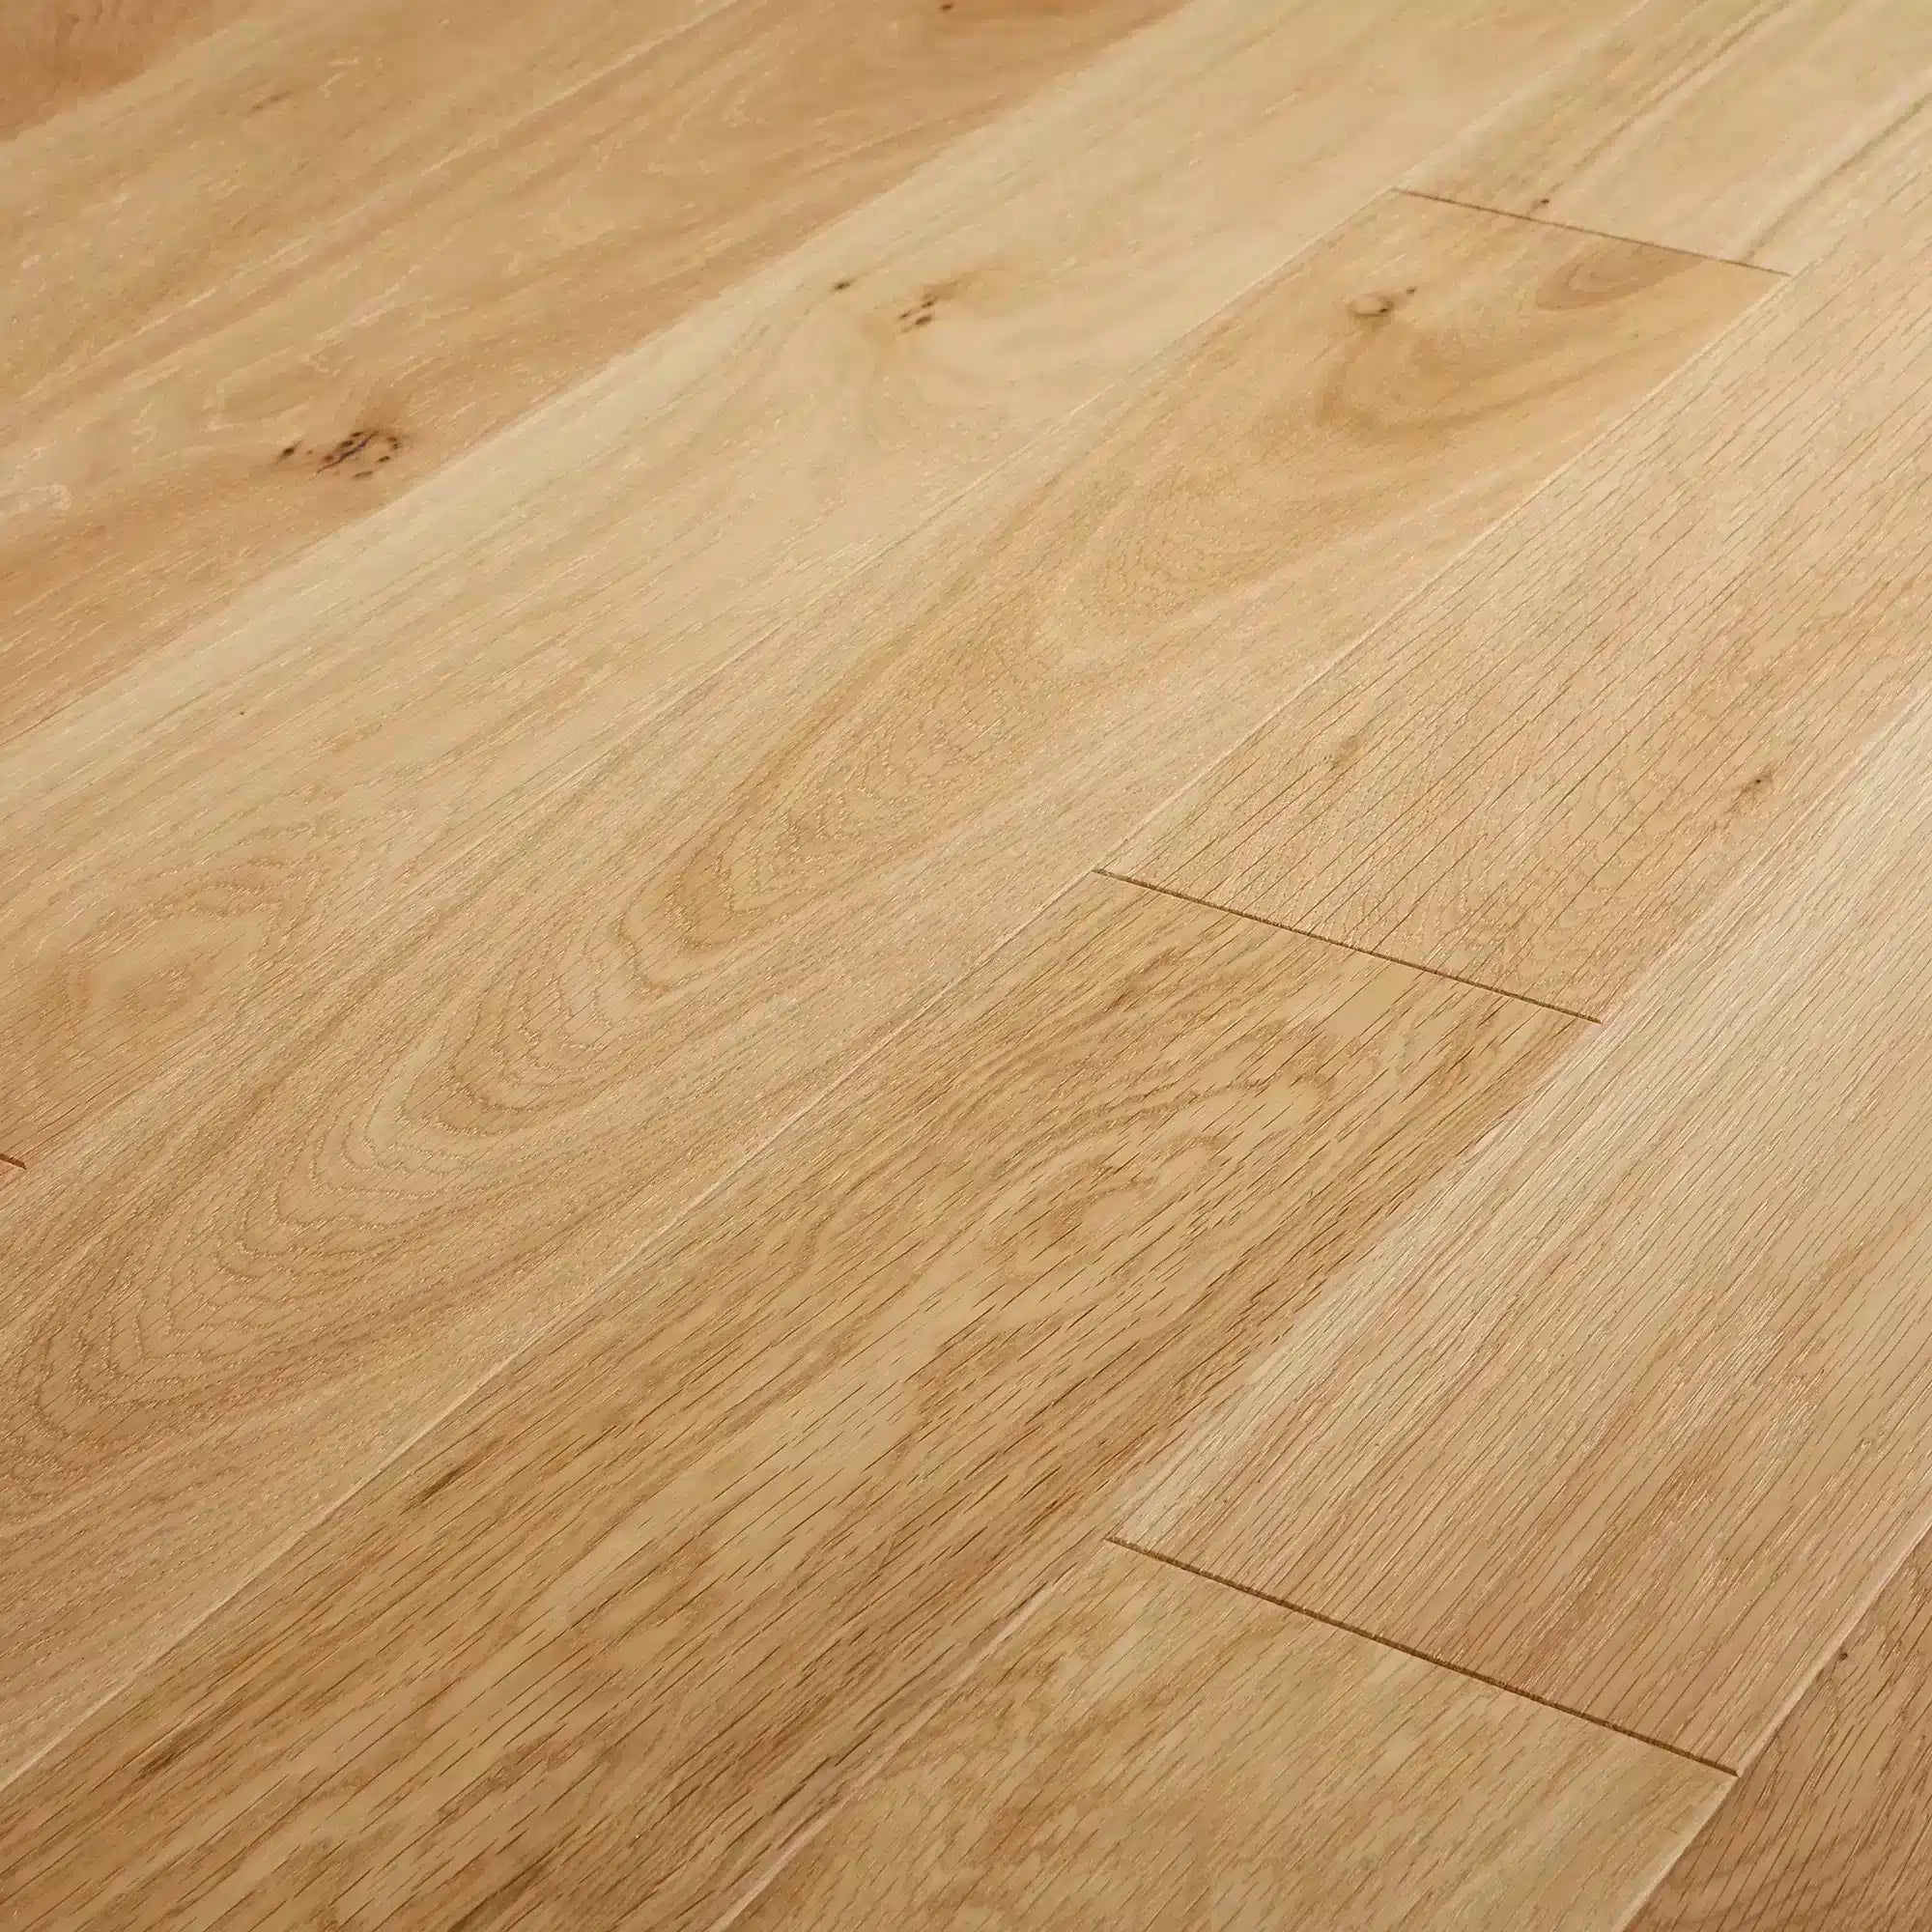 Engineered Real Wood Flooring